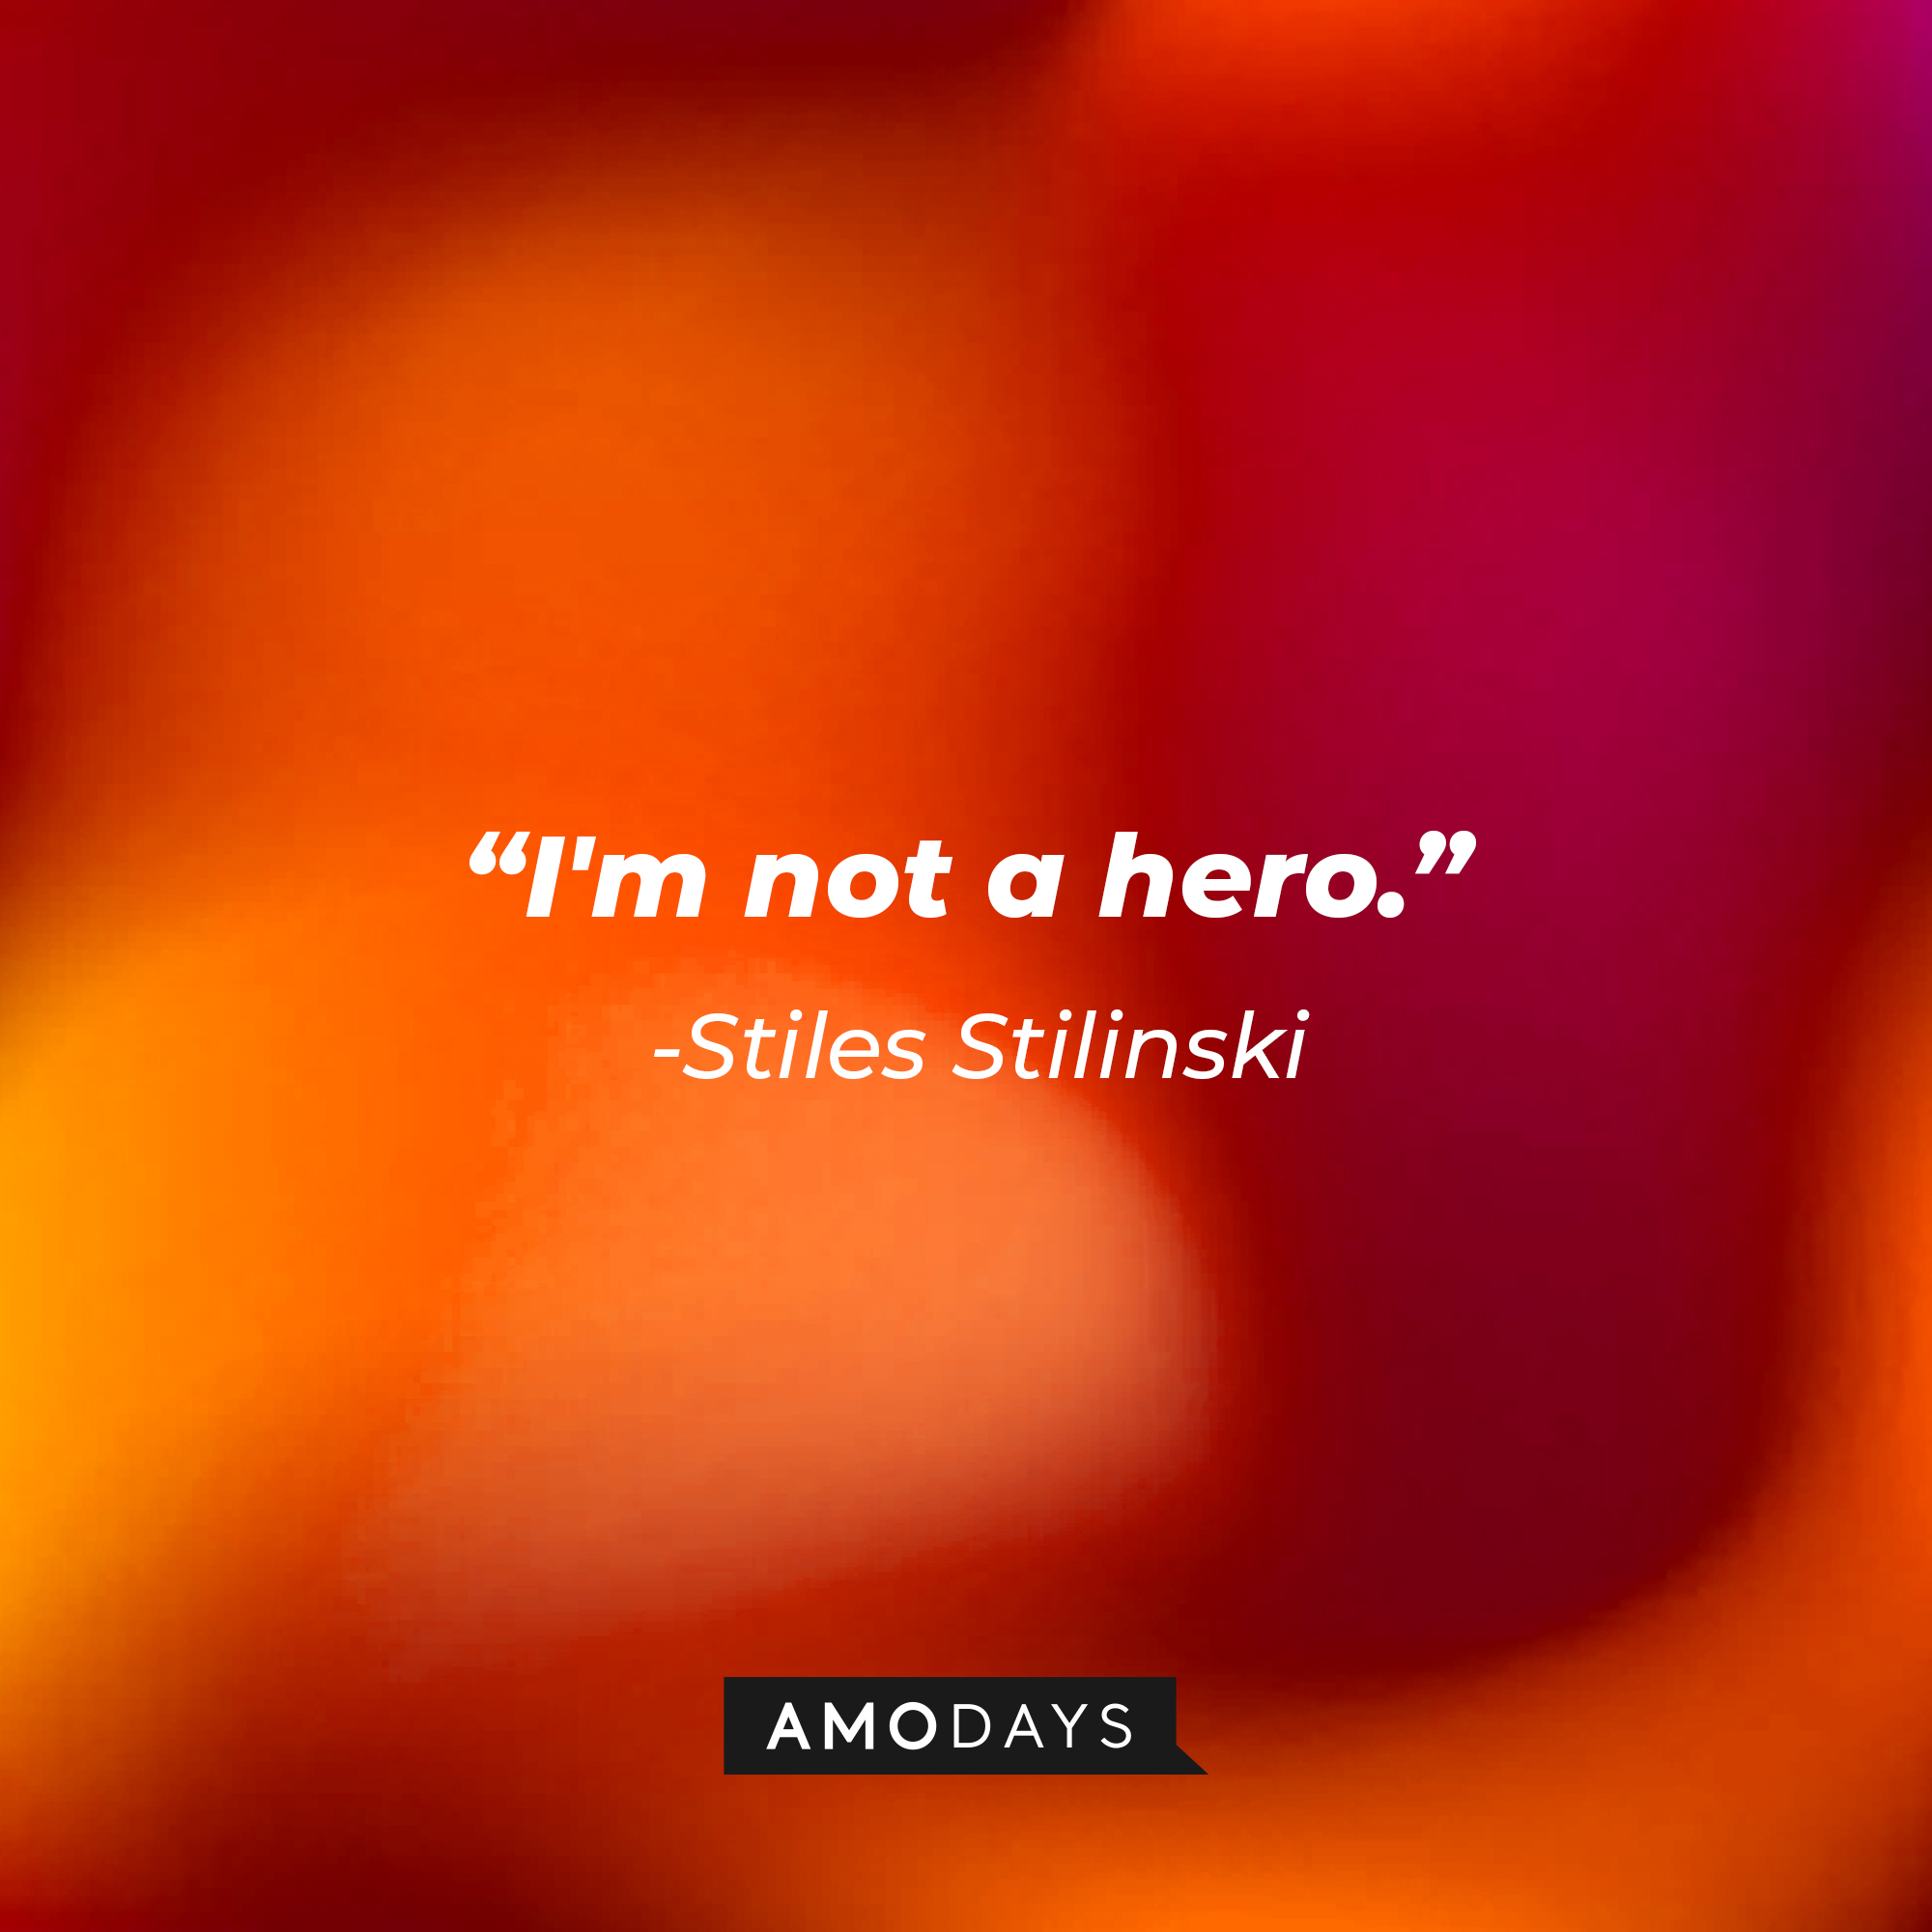 Stiles Stilinski's quote: "I'm not a hero." | Image: AmoDays